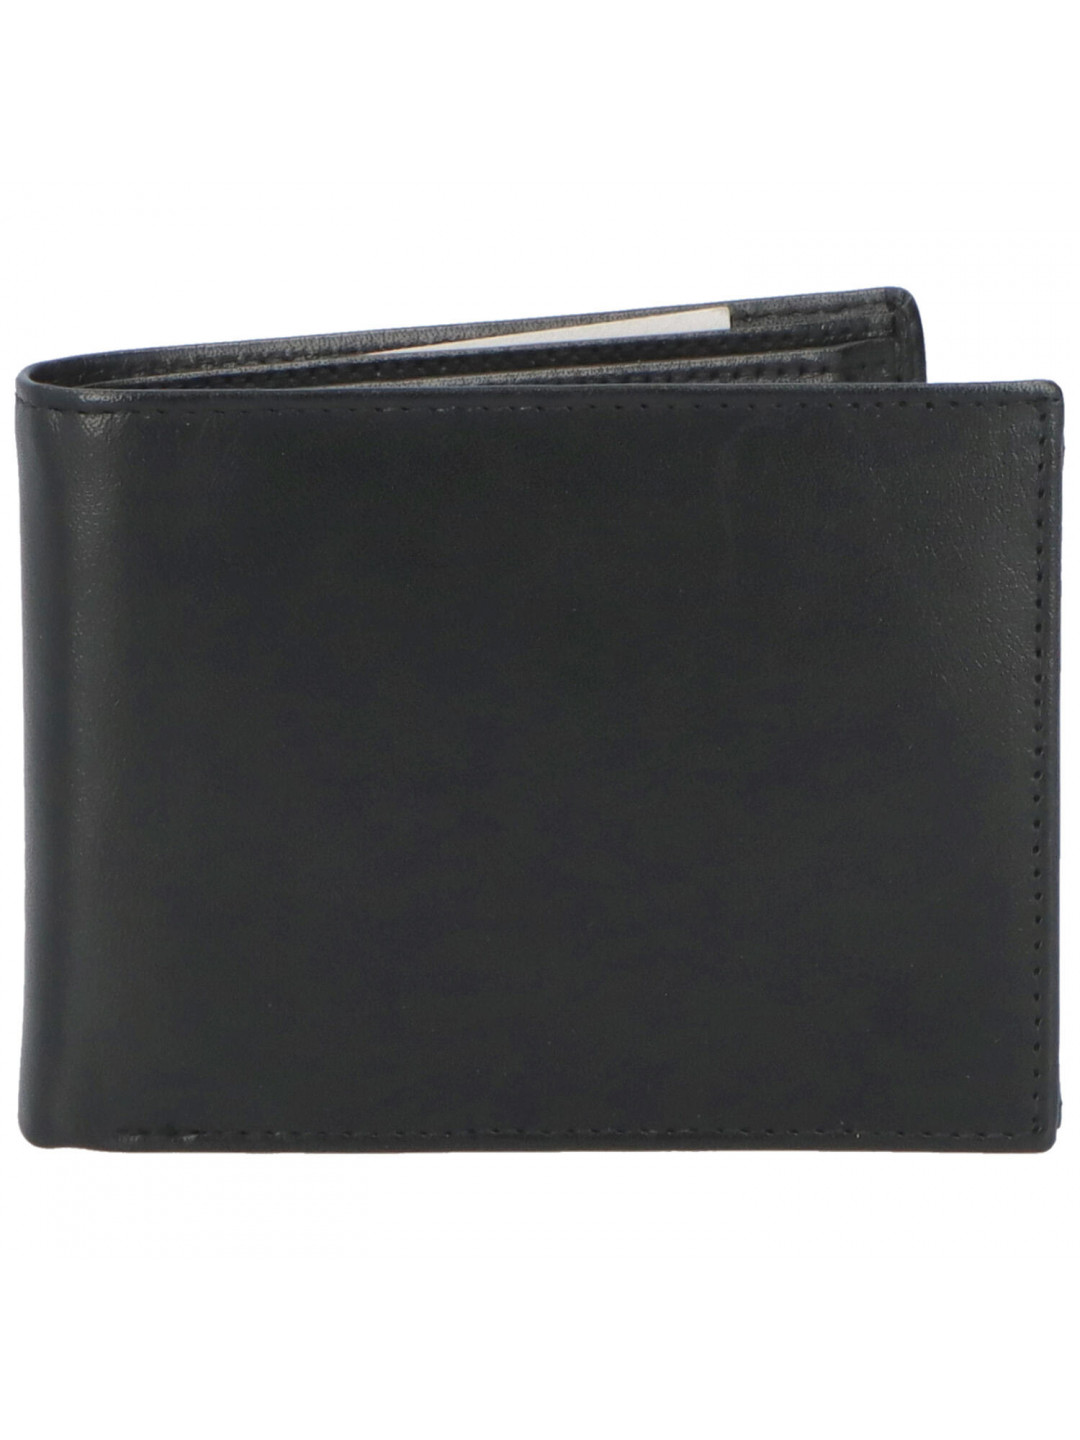 Pánská kožená peněženka černá – Tomas Ivanou